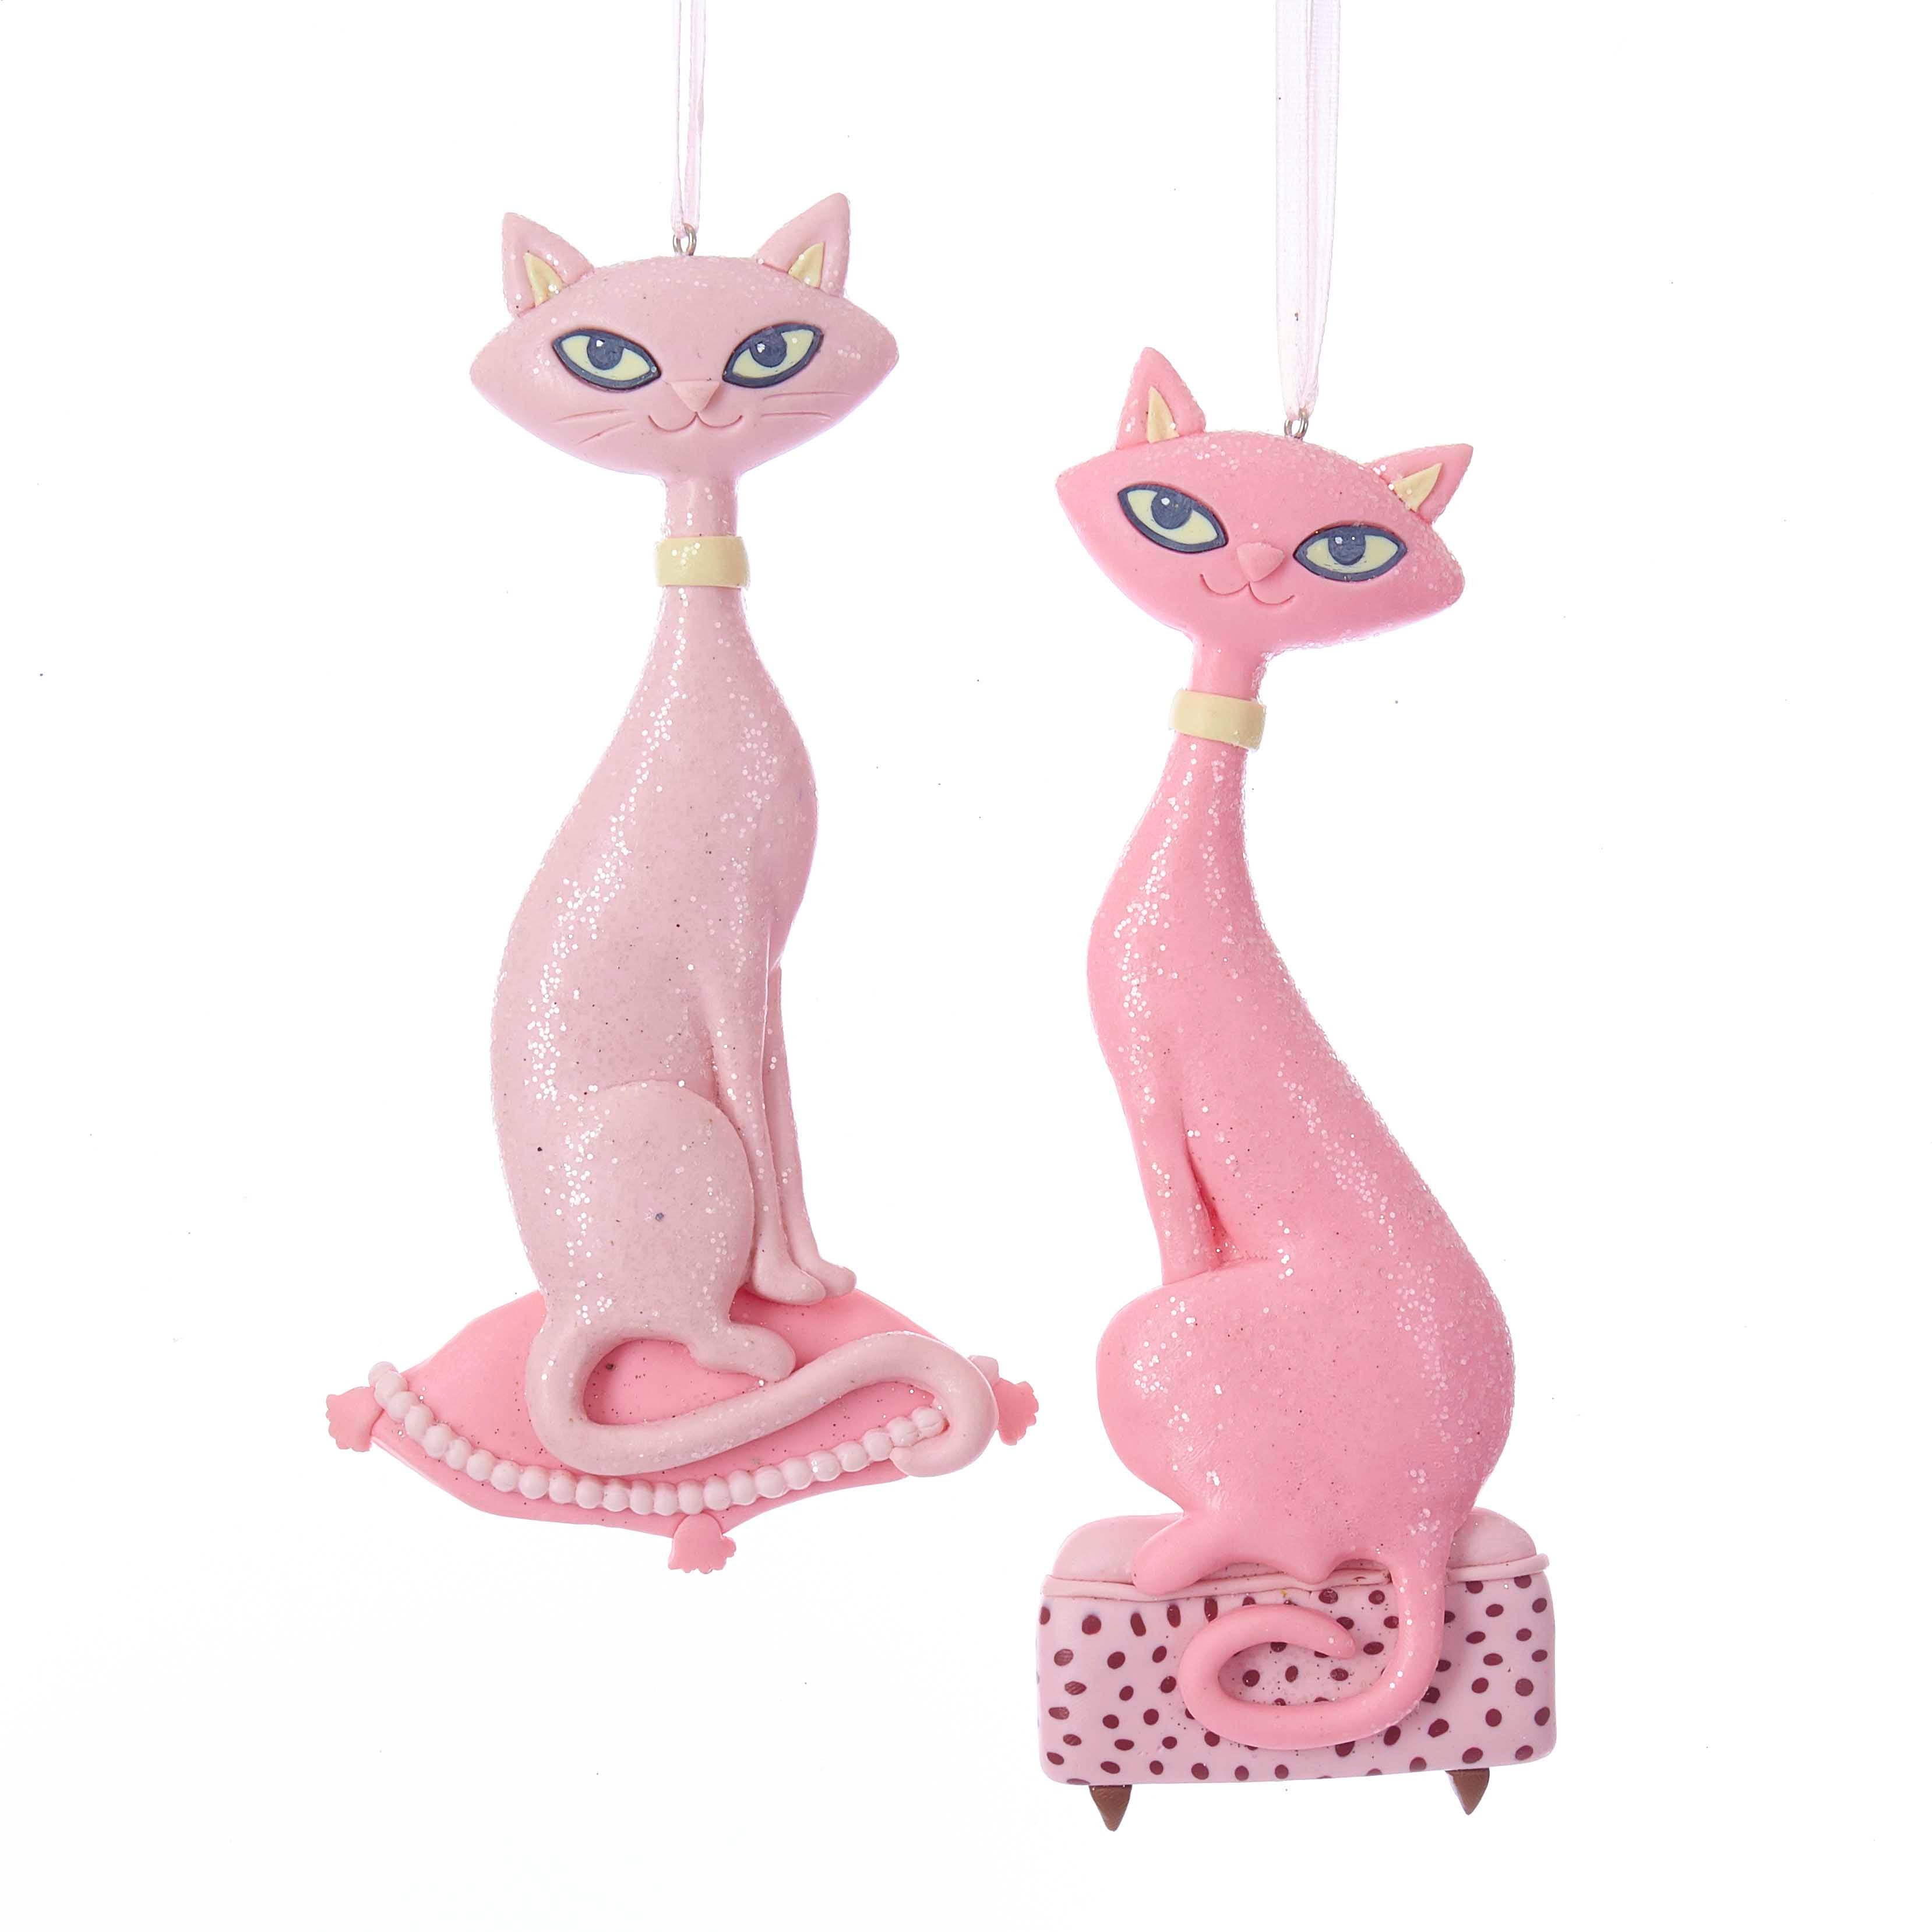 Retro Pink Cat Ornaments